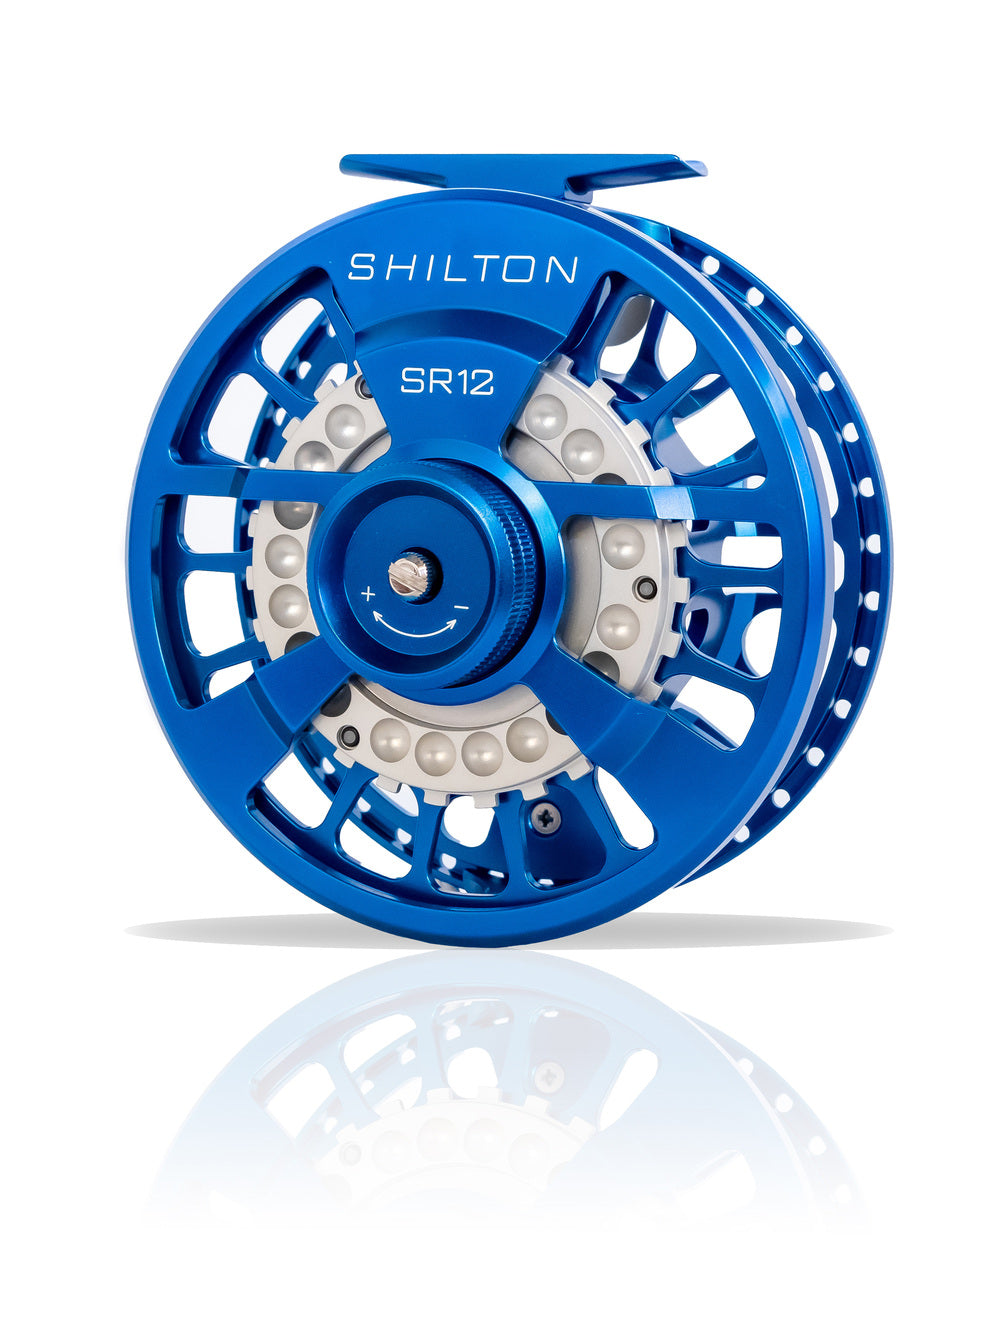 Shilton SR12 Blue Reel (12wt+)